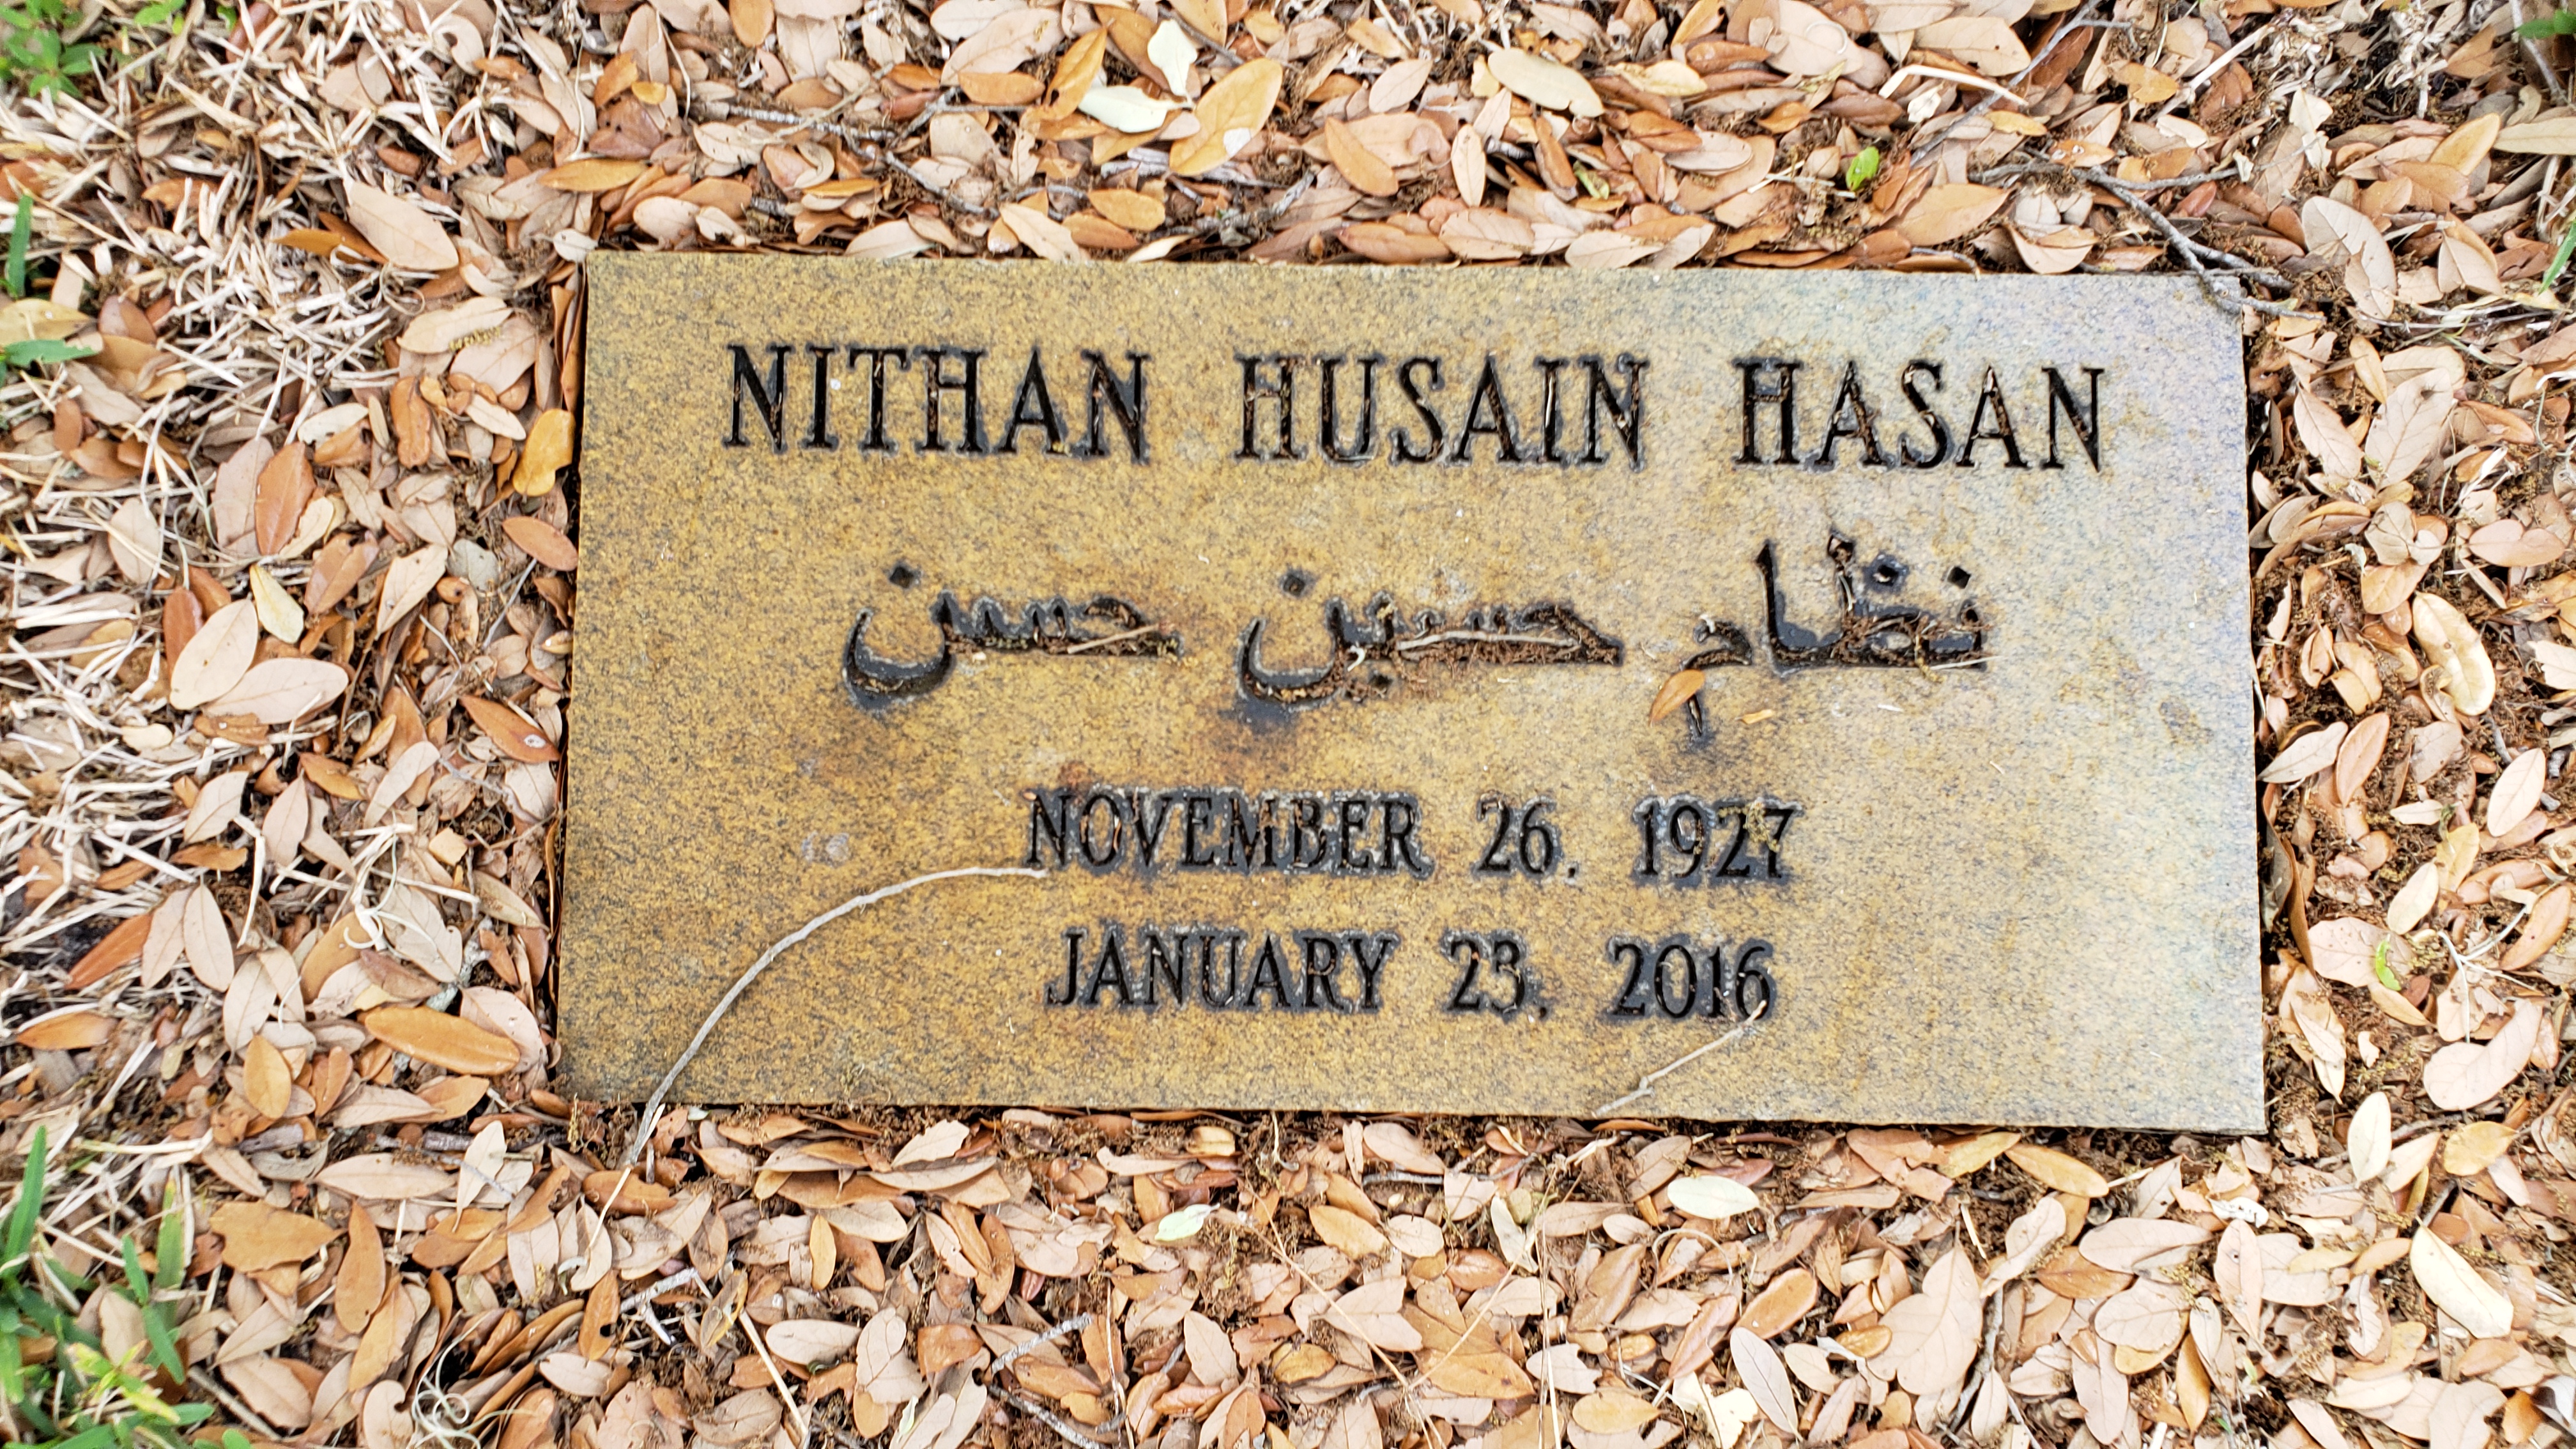 Nithan Husain Hasan